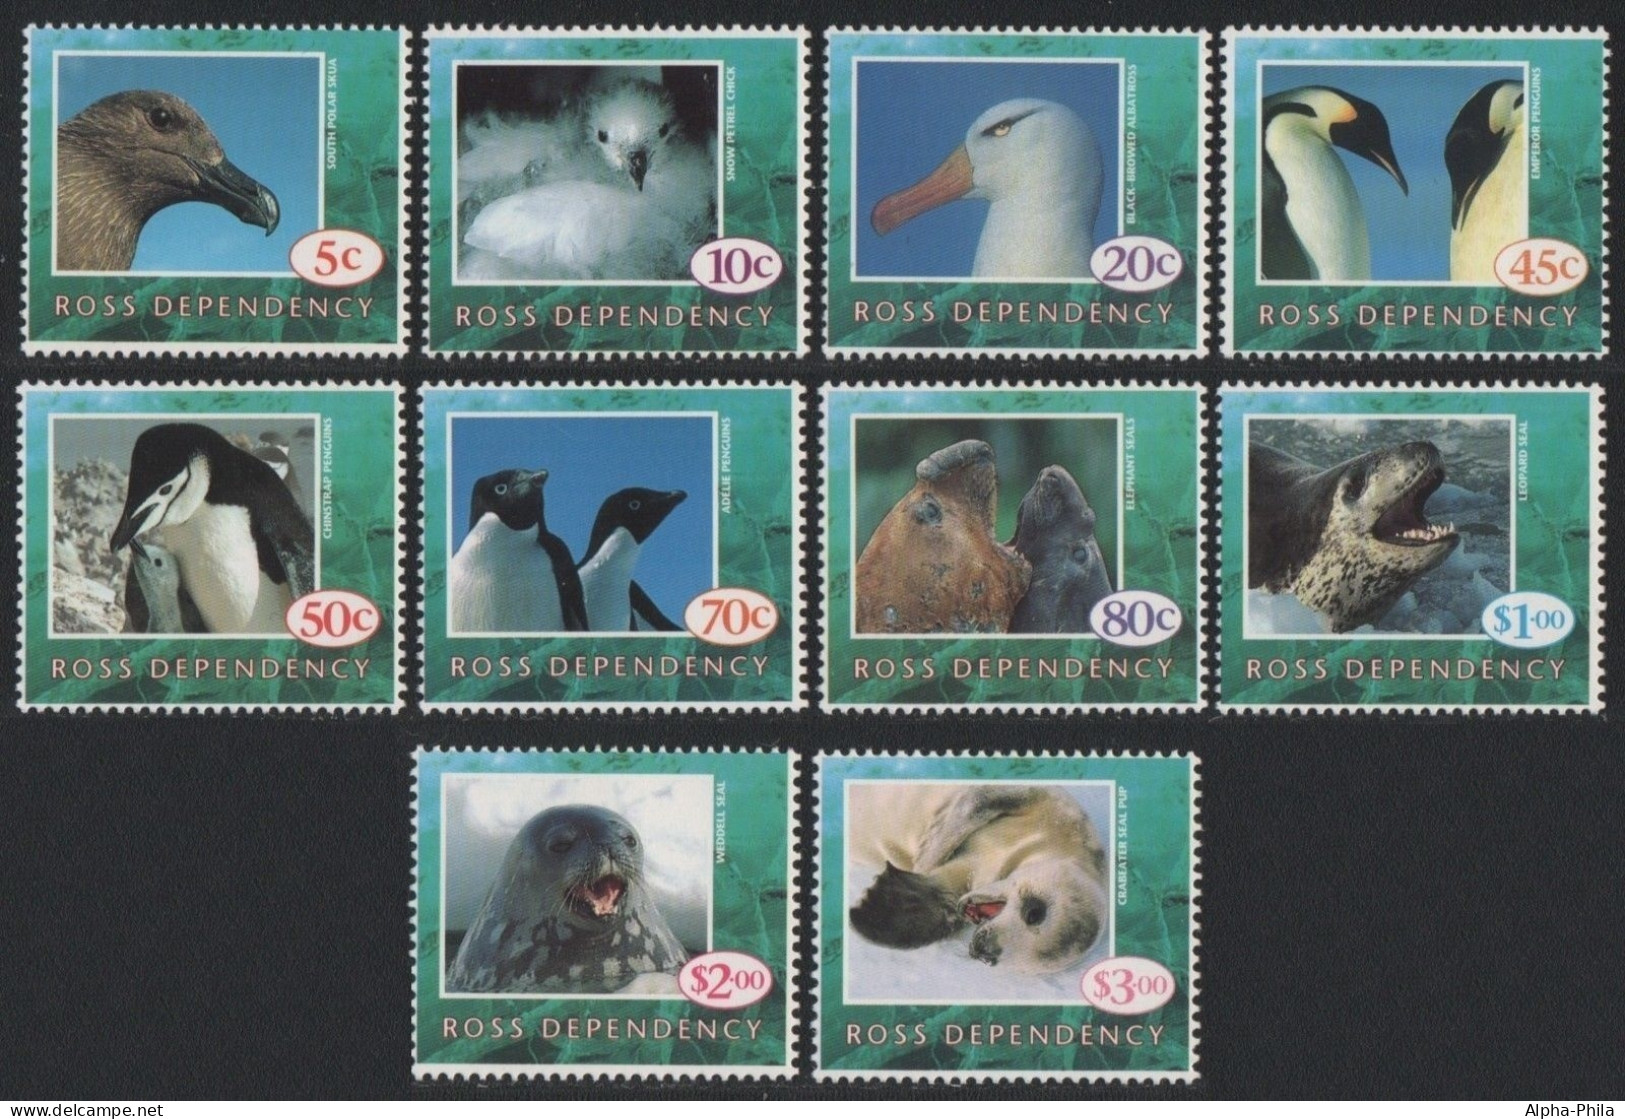 Ross-Gebiet 1994 - Mi-Nr. 21-30 ** - MNH - Vögel, Robben / Birds, Seals - Nuevos